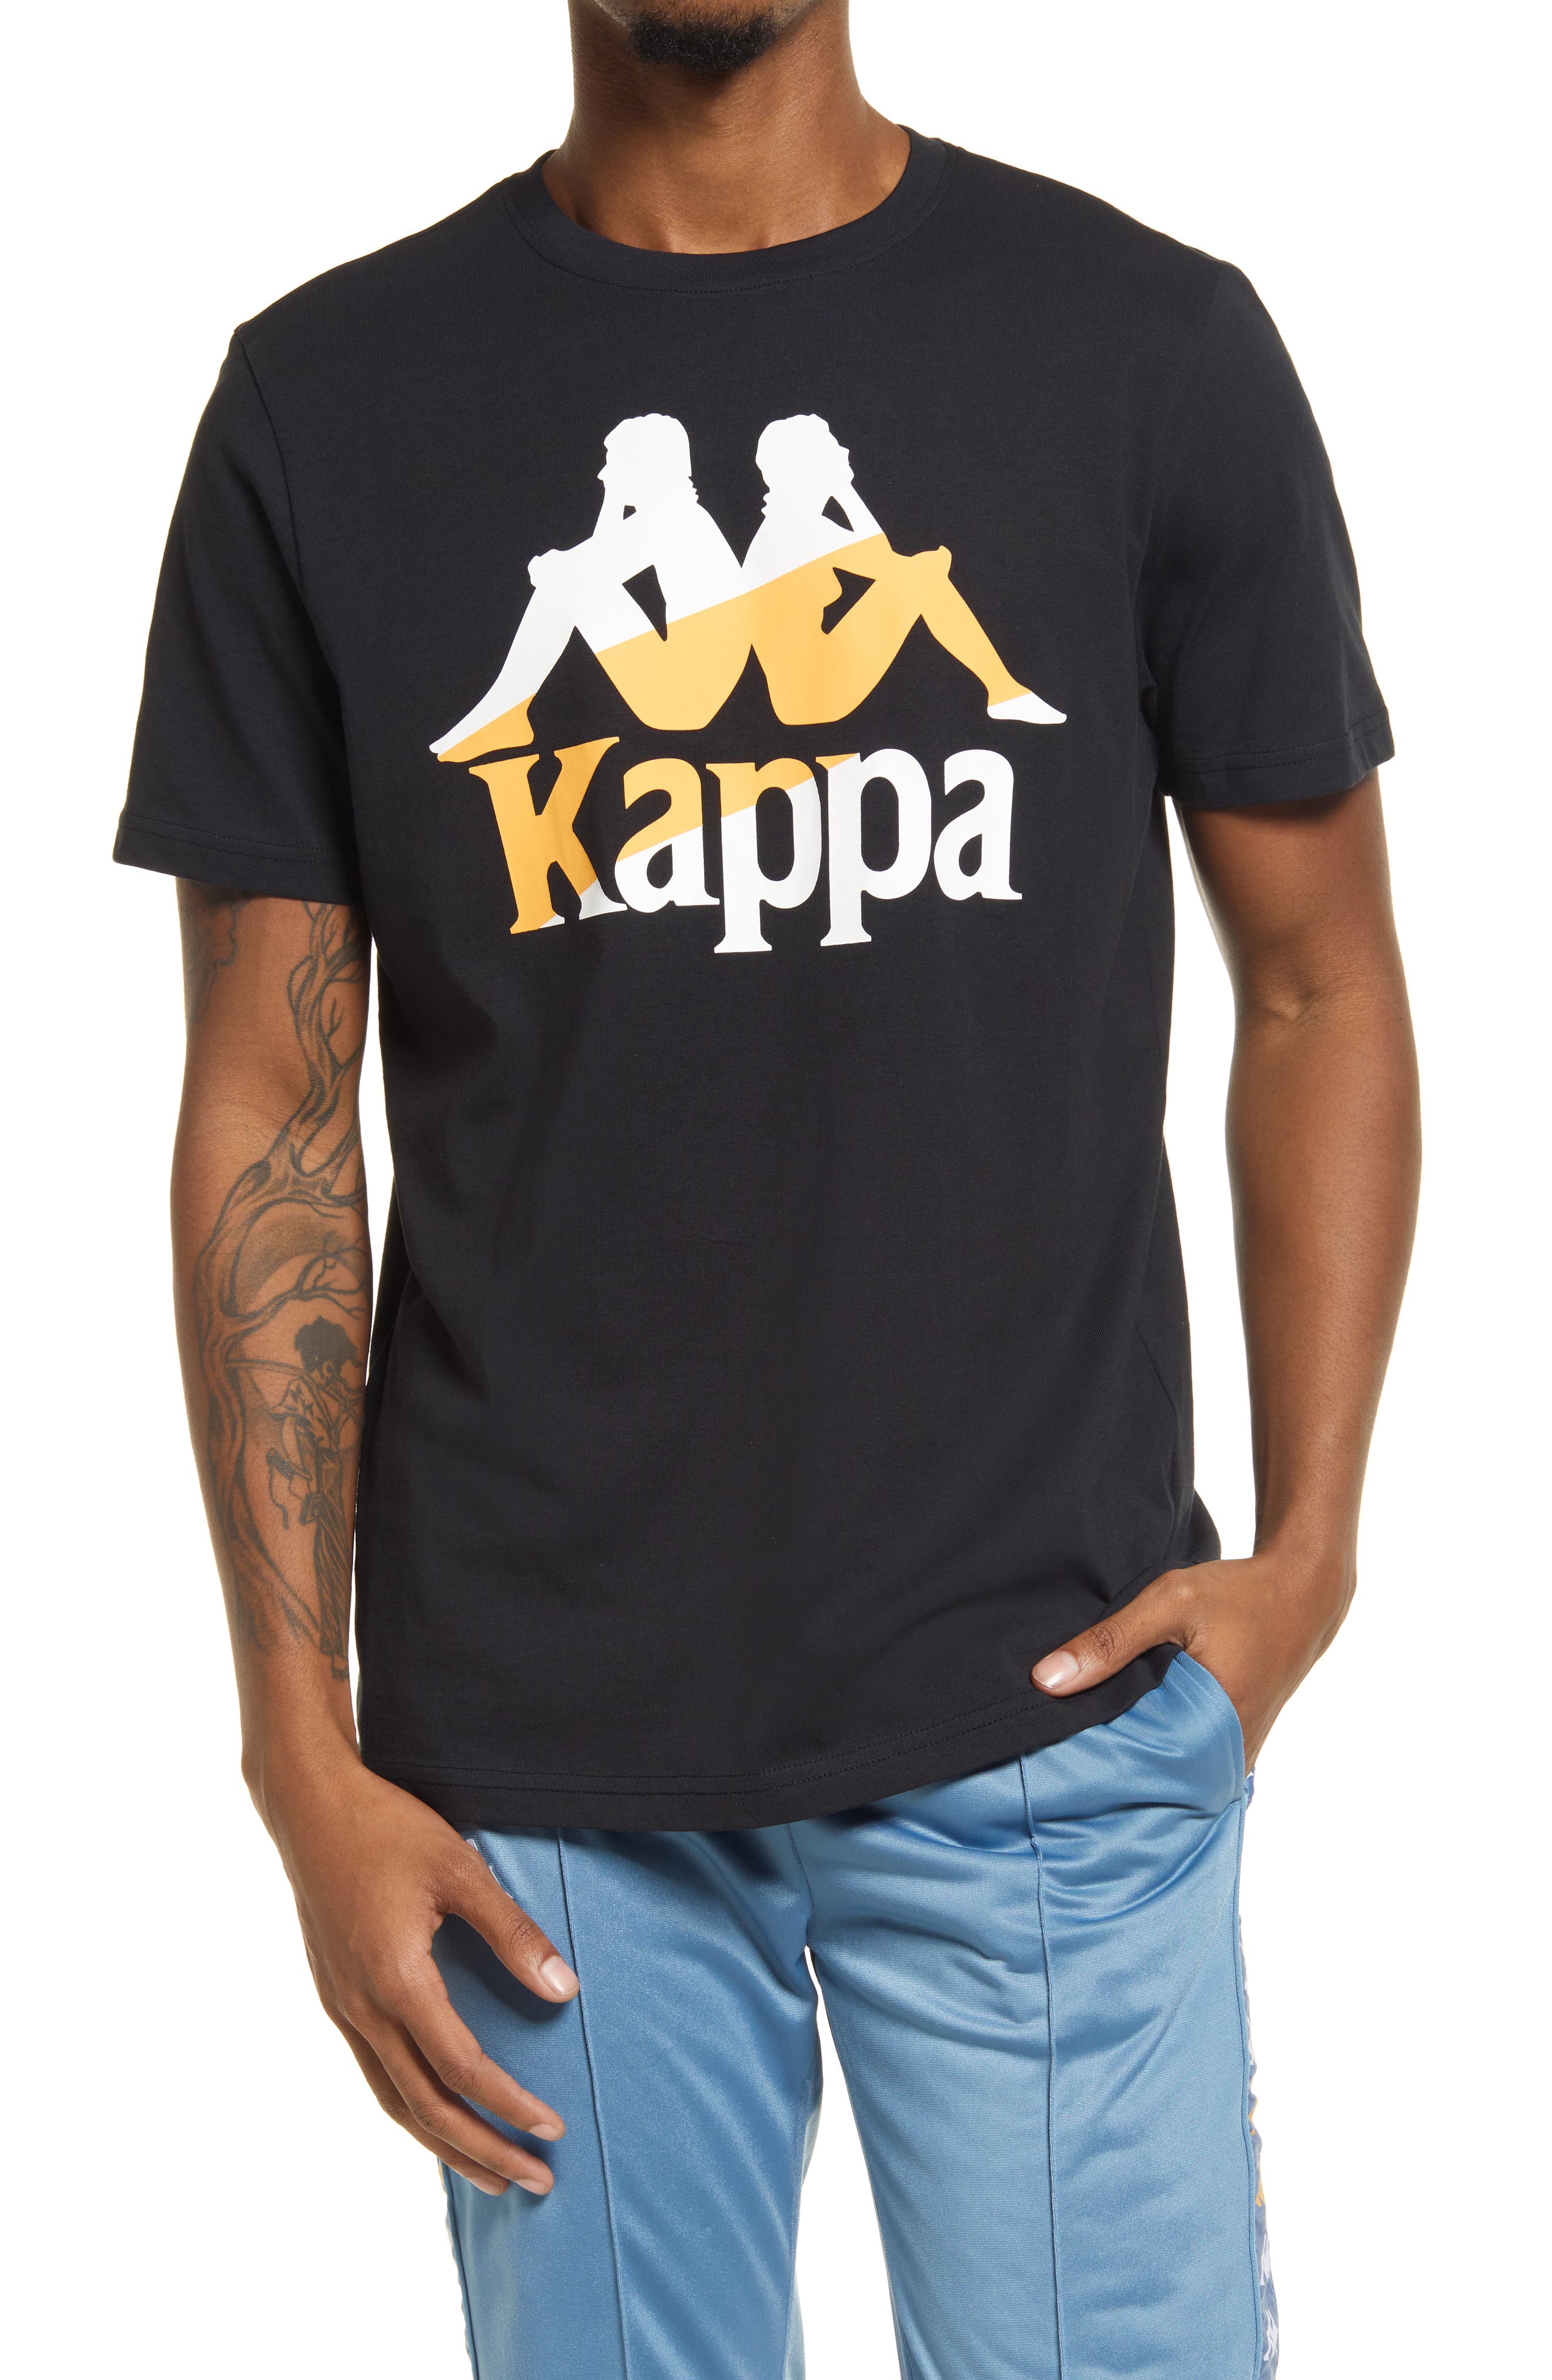 Kappa Football Barta Graphic Tee in Black Smoke-Grey-Orange-White at Nordstrom, Size X-Large